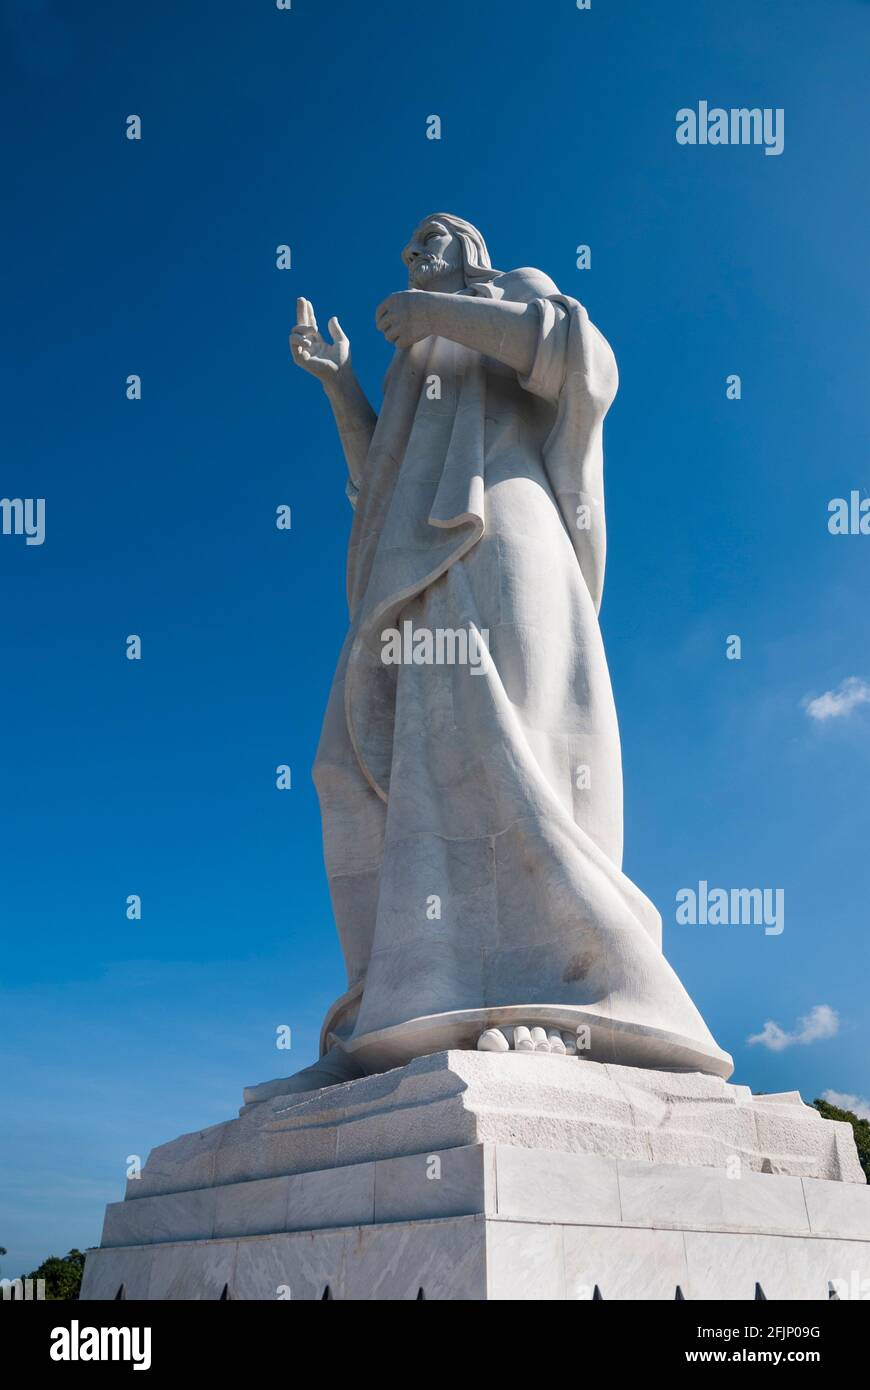 Il Cristo dell'Avana è una grande scultura che rappresenta Gesù di Nazaret su una collina che domina la baia di l'Avana, Cuba Foto Stock